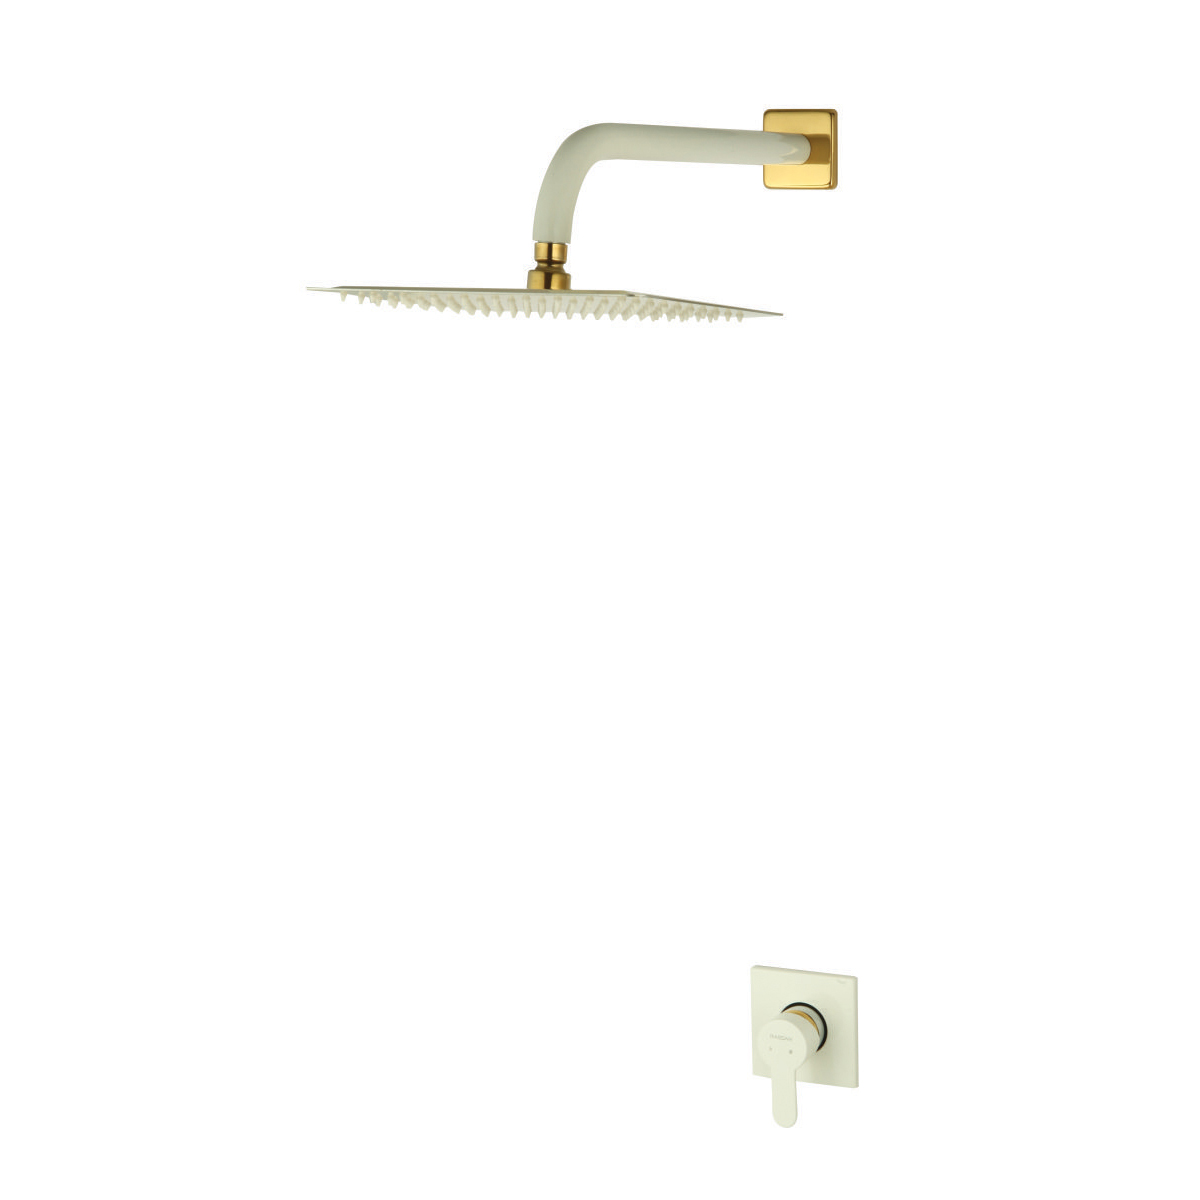 ملحقات شیر حمام و مکانیزم توکار ویوات راسان مدل فلت کلاس (3) سفید طلایی